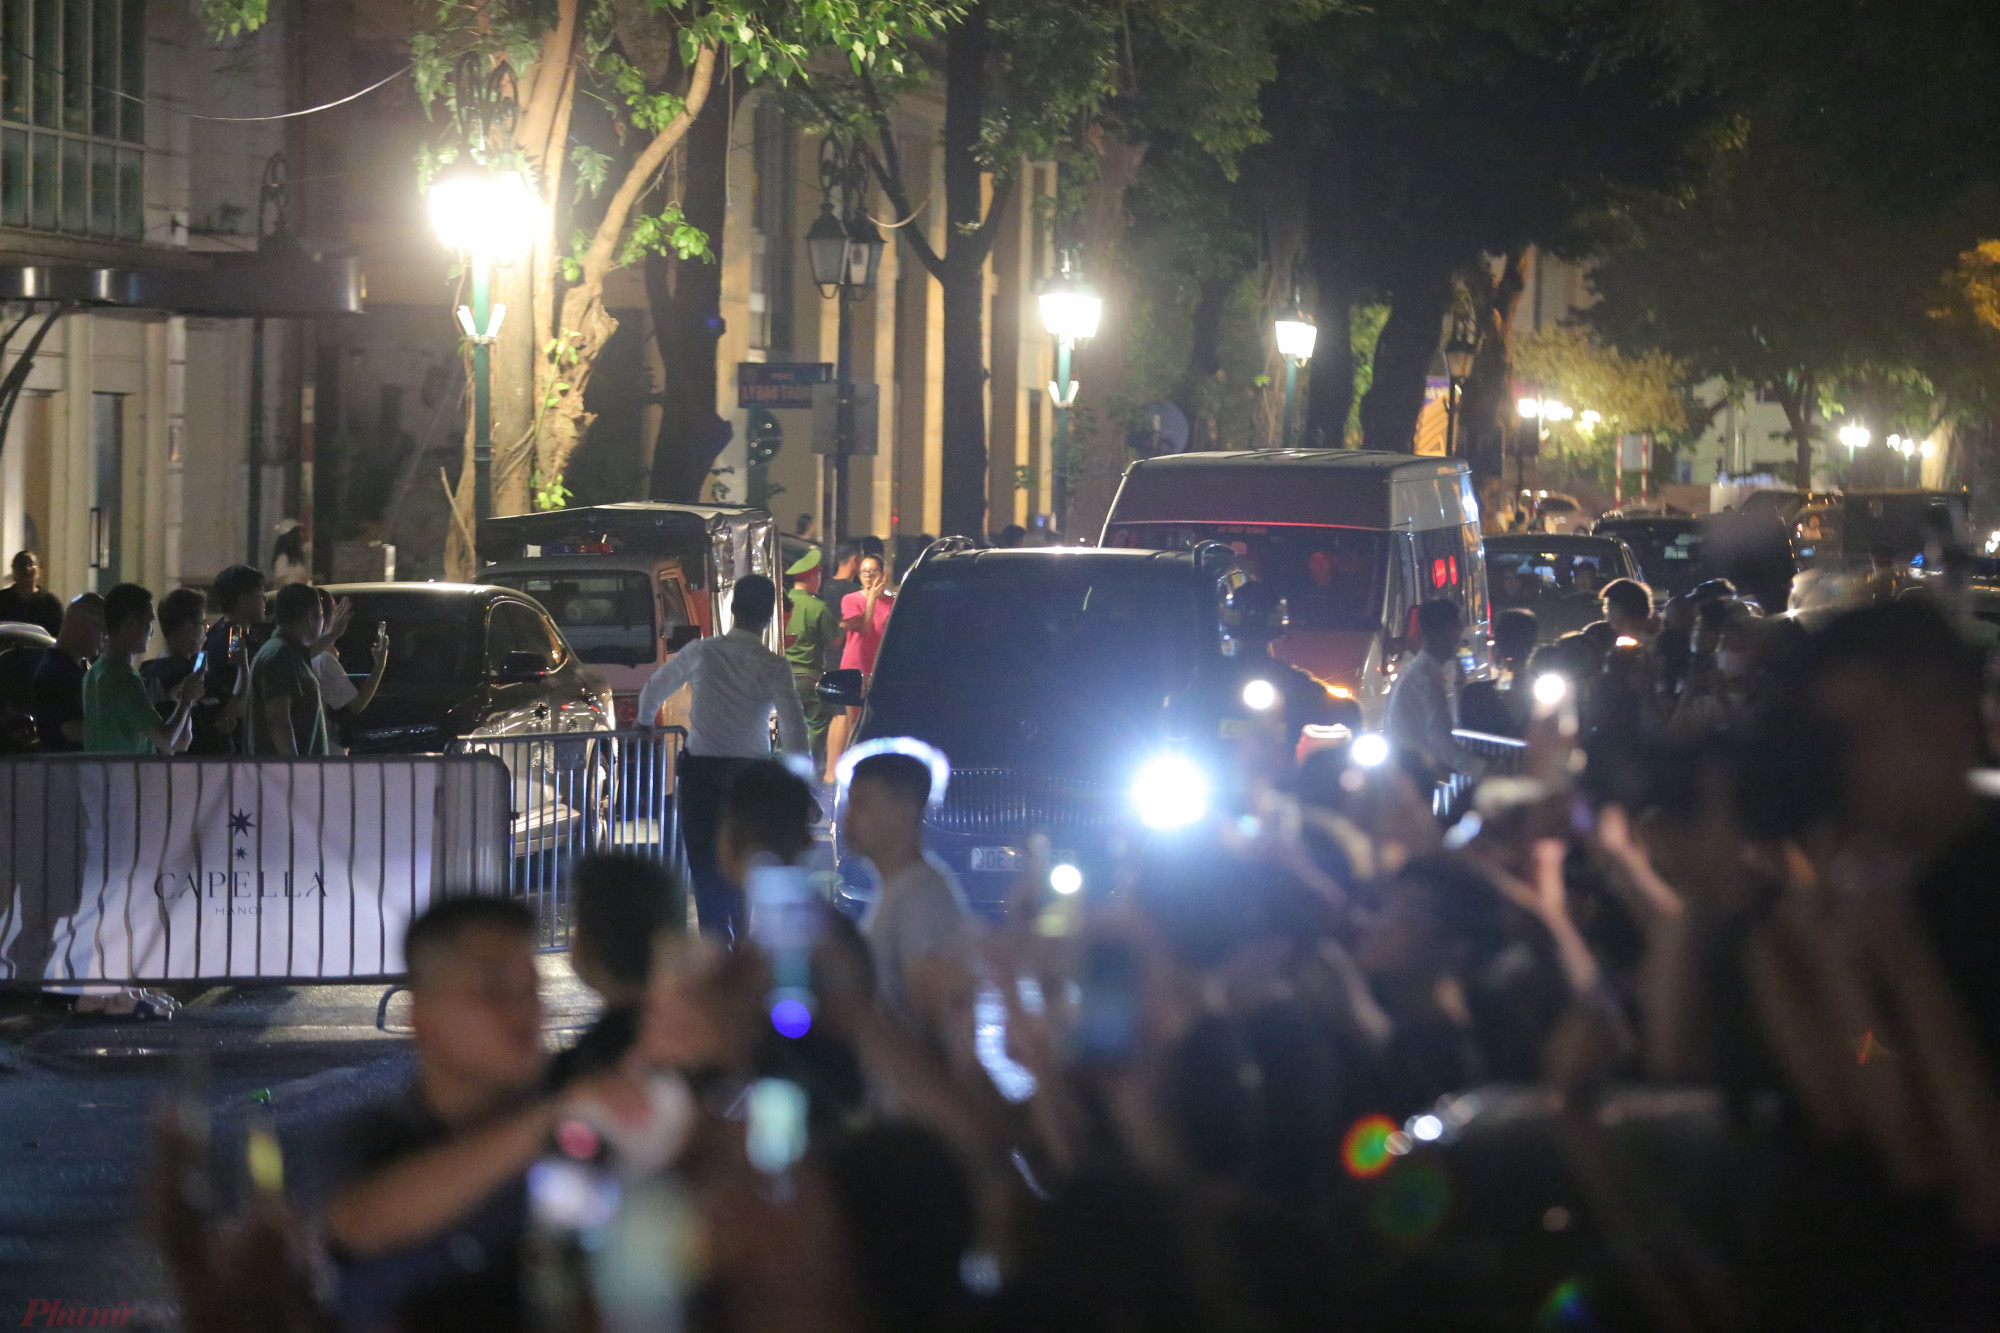 Khoảng 1 giờ 10, đoàn xe đưa nhóm nhạc BlackPink về tới khách sạn Capella Hà Nội. Công tác bảo vệ an ninh được thực hiện nghiêm ngặt, rất nhiều vệ sĩ dùng ô quây kín các xe khi nhóm nhạc xuống xe.